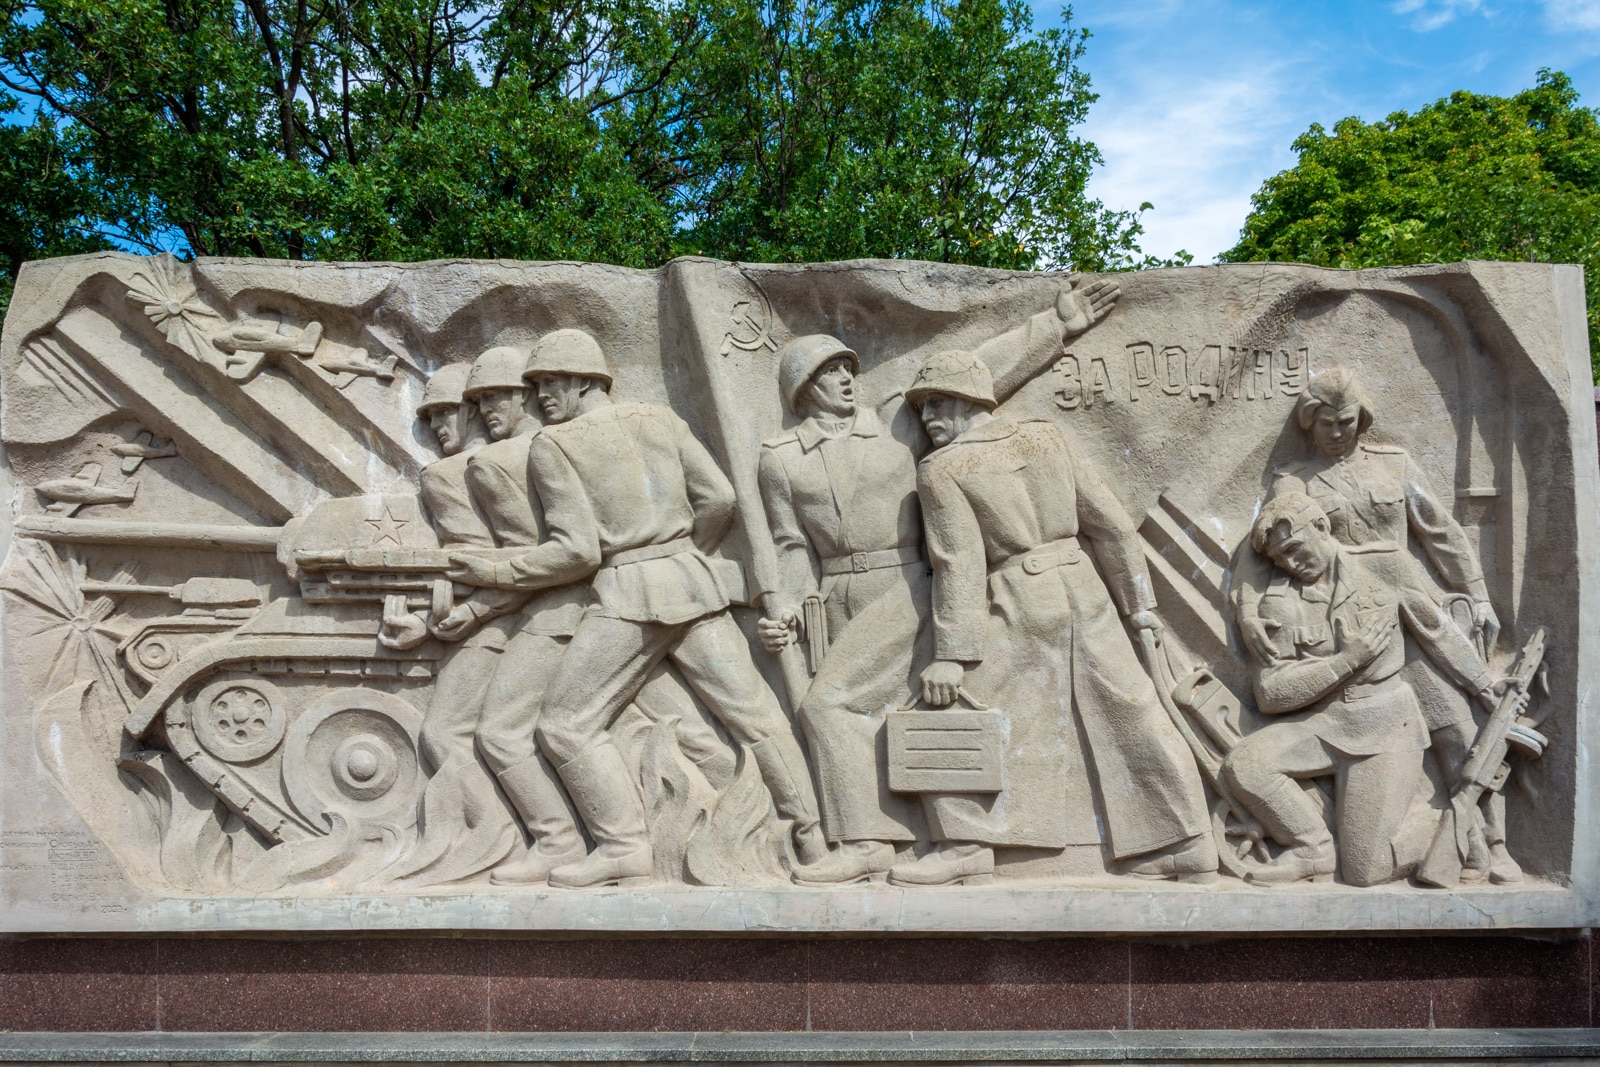 Soviet reliefs in Ukraine